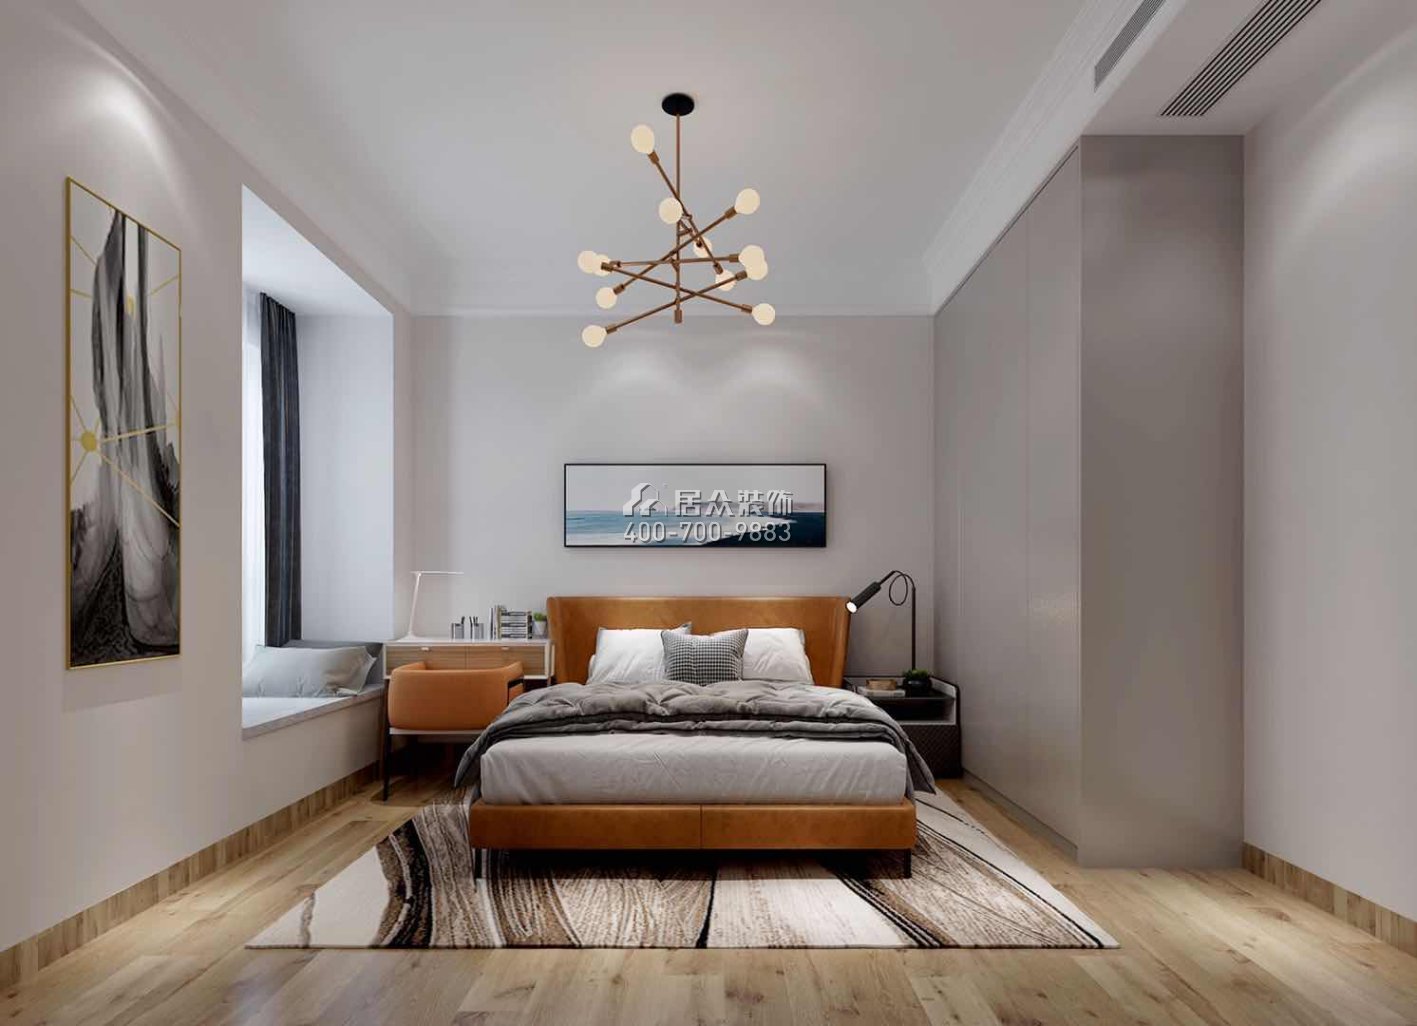 森林湖兰溪谷166平方米现代简约风格平层户型卧室装修效果图